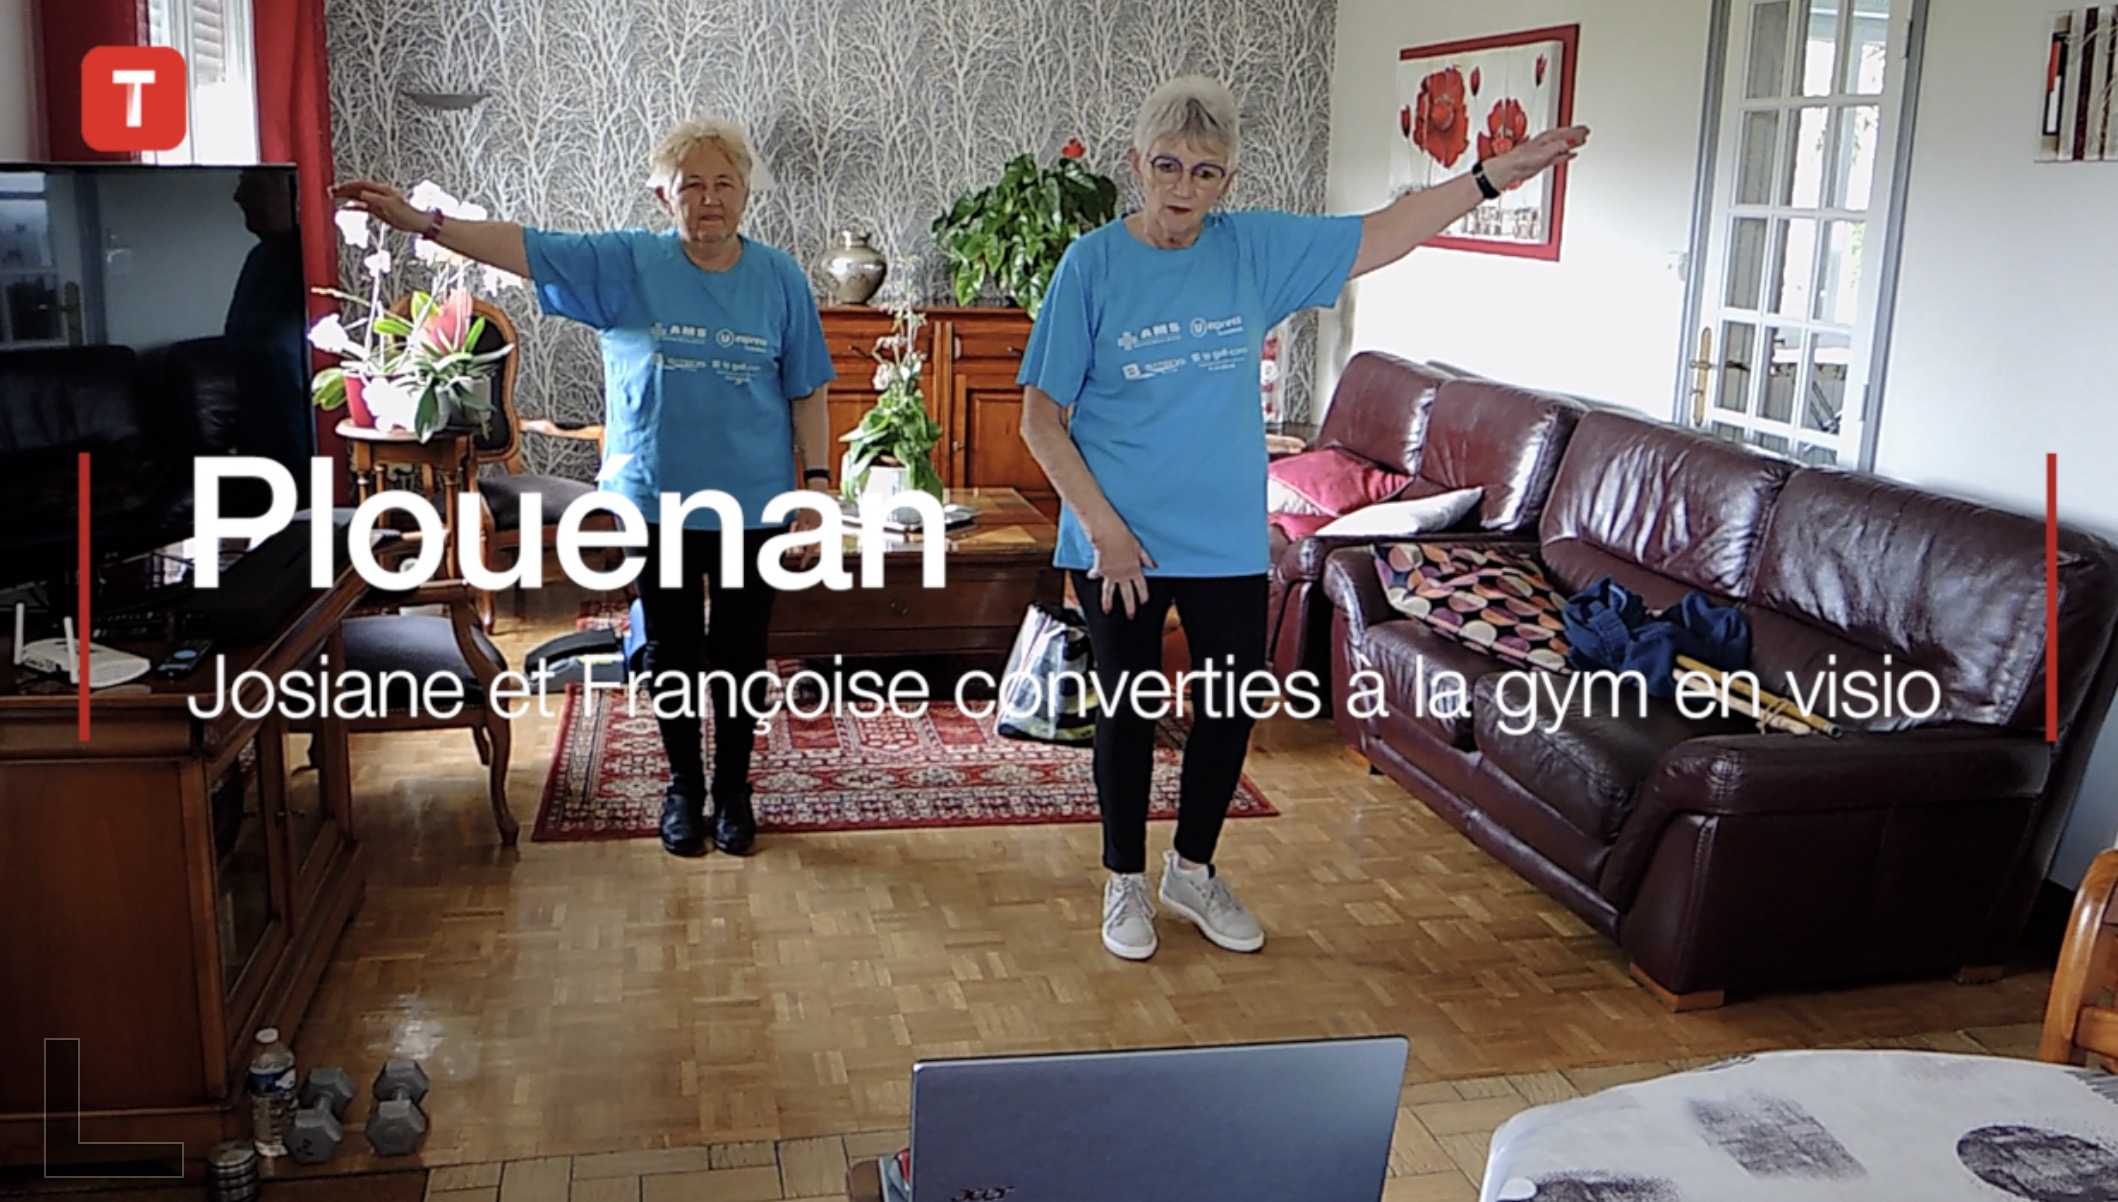 Plouénan. Josiane et Françoise converties à la gym en visio (Le Télégramme)